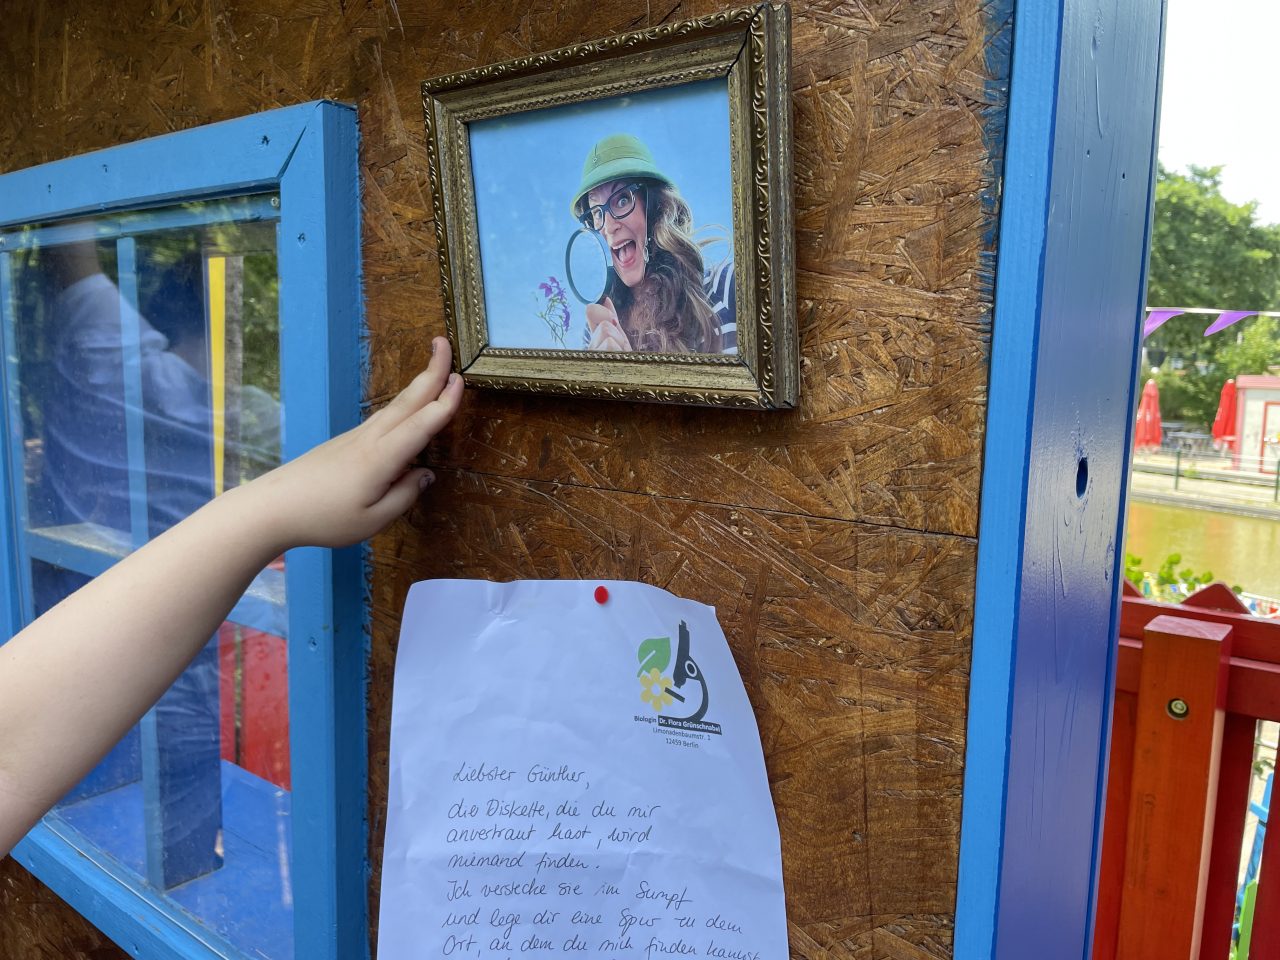 ein Bild und ein Zettel an einer Holzwand befestigt - eine Hand zeigt darauf und im Fenster spiegelt sich etwas weißes